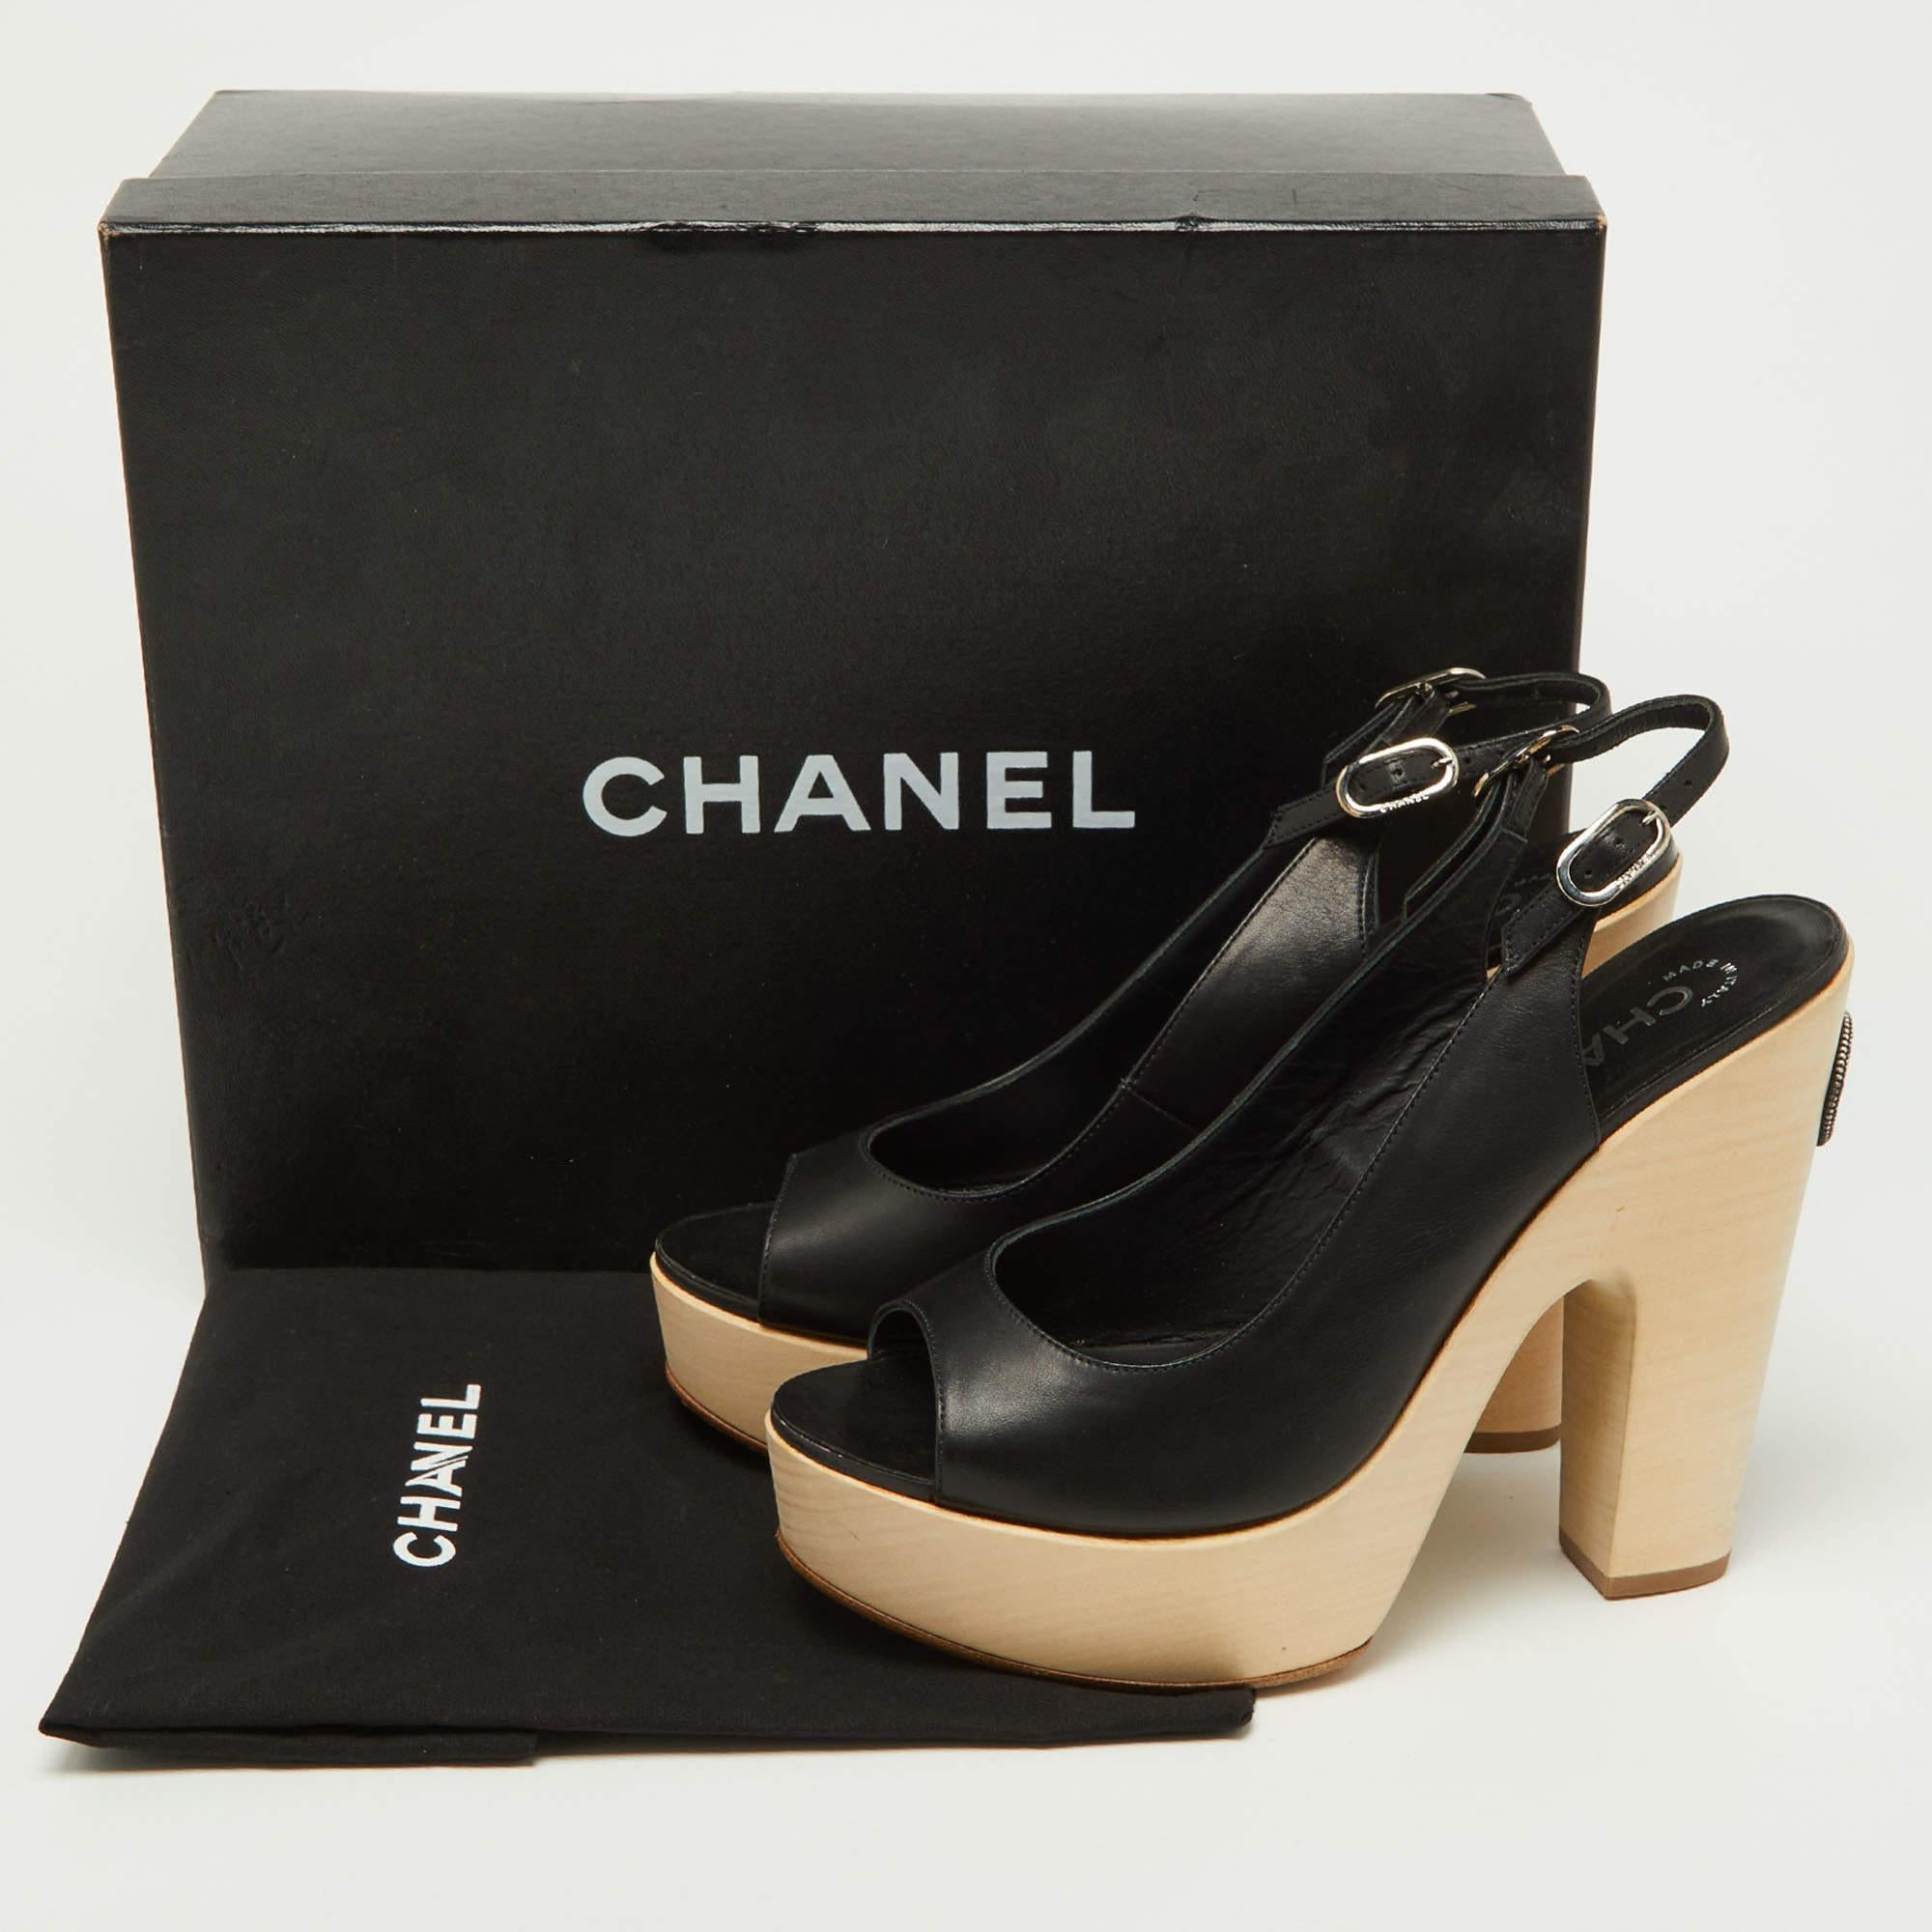 Chanel Black Leather Wooden Block Heel Slingback Platform Pumps Size 39 5